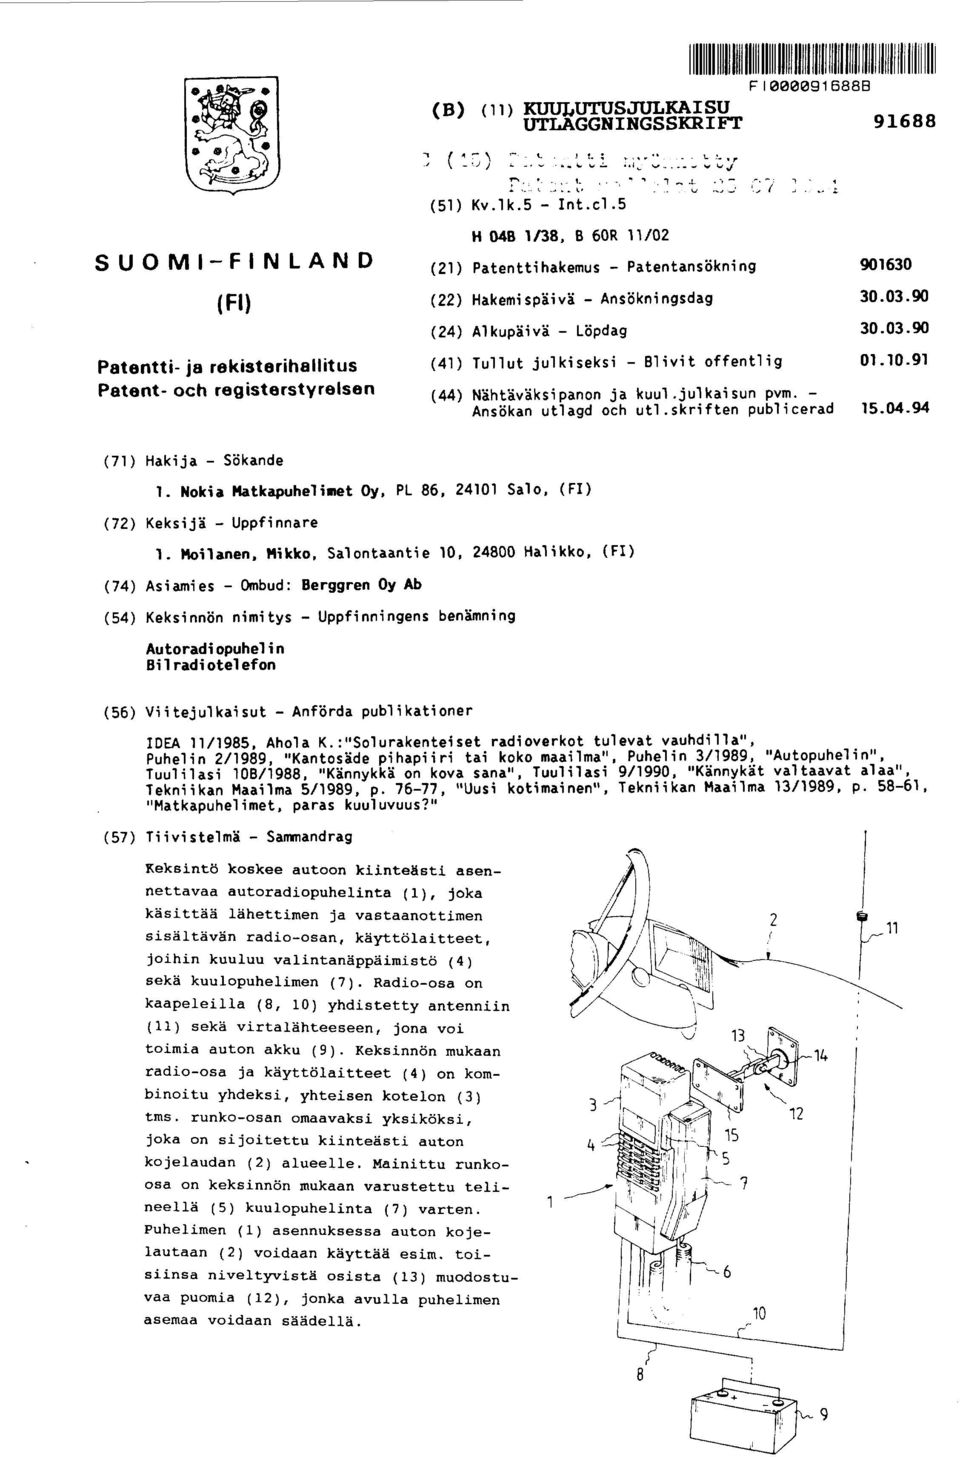 .; SUOMI-FINLAND (Fl) Patentti- ja rekisterihallitus Patent- och registerstyrelsen H O48 1/38, B 60R 11/02 (21) Patenttihakemus - Patentansökning 901630 (22) Hakemispäivä - Ansökningsdag 30.03.